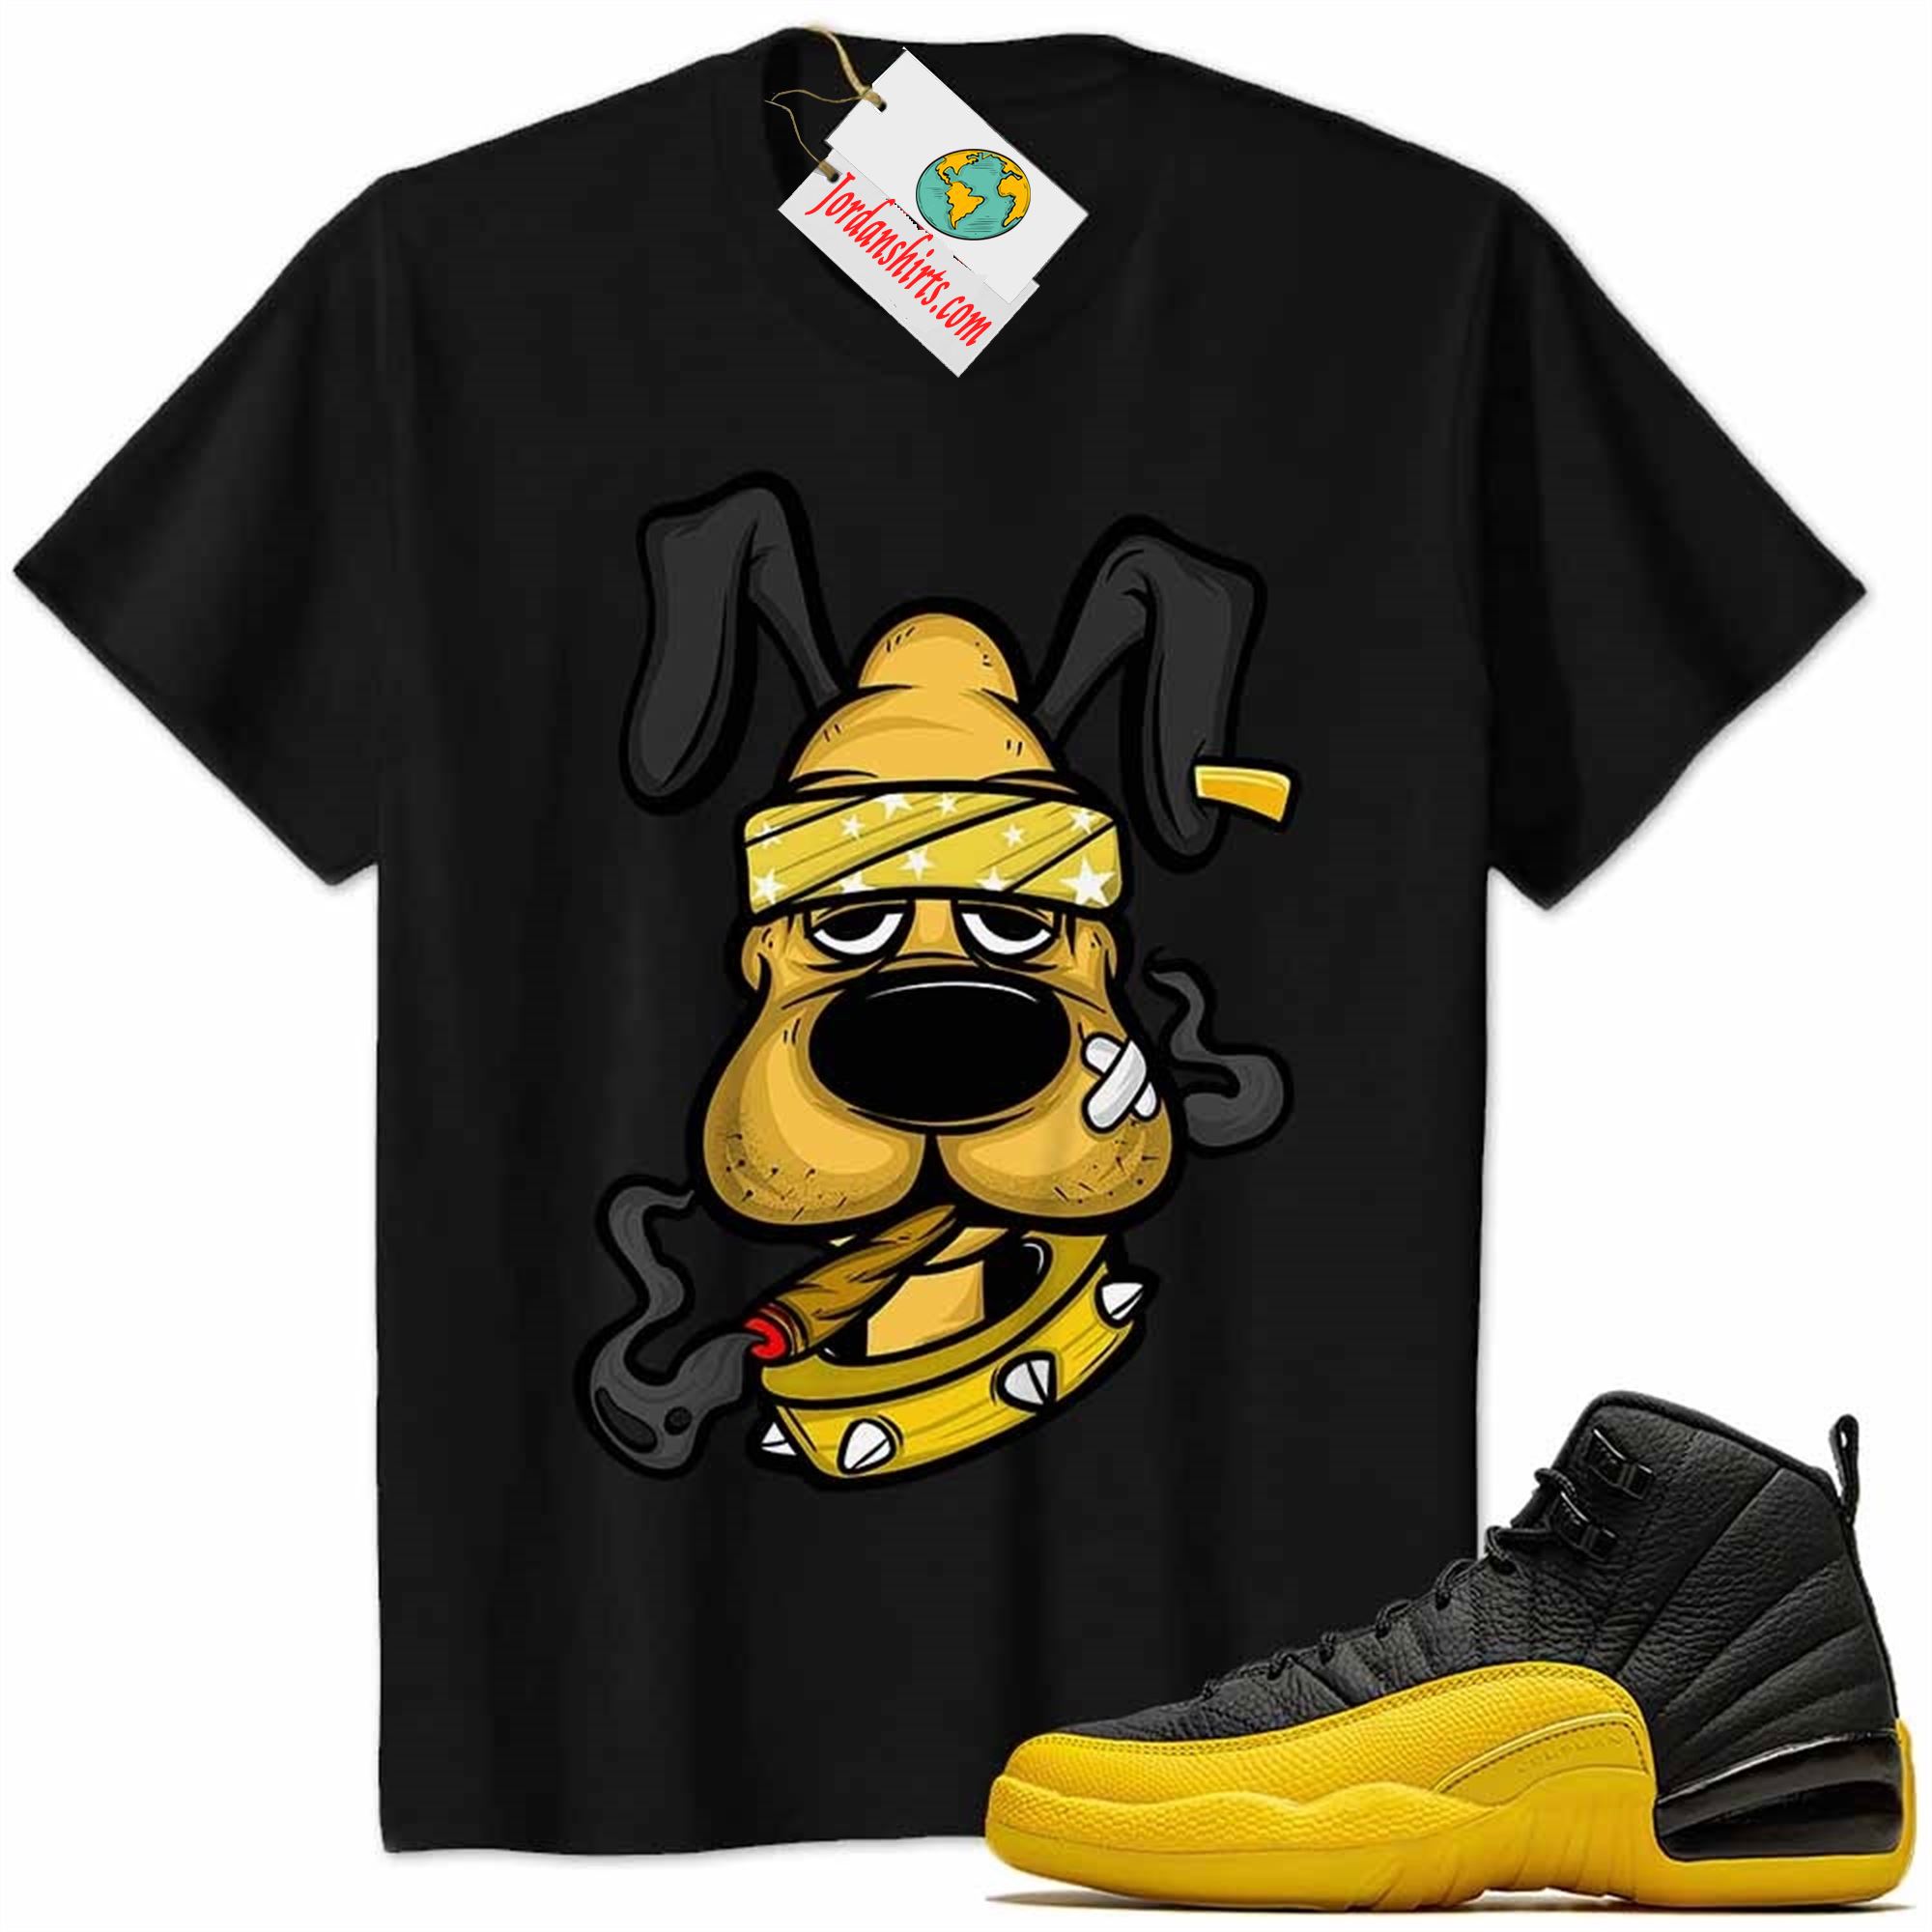 Jordan 12 Shirt, Gangster Pluto Smoke Weed Black Air Jordan 12 University Gold 12s Size Up To 5xl